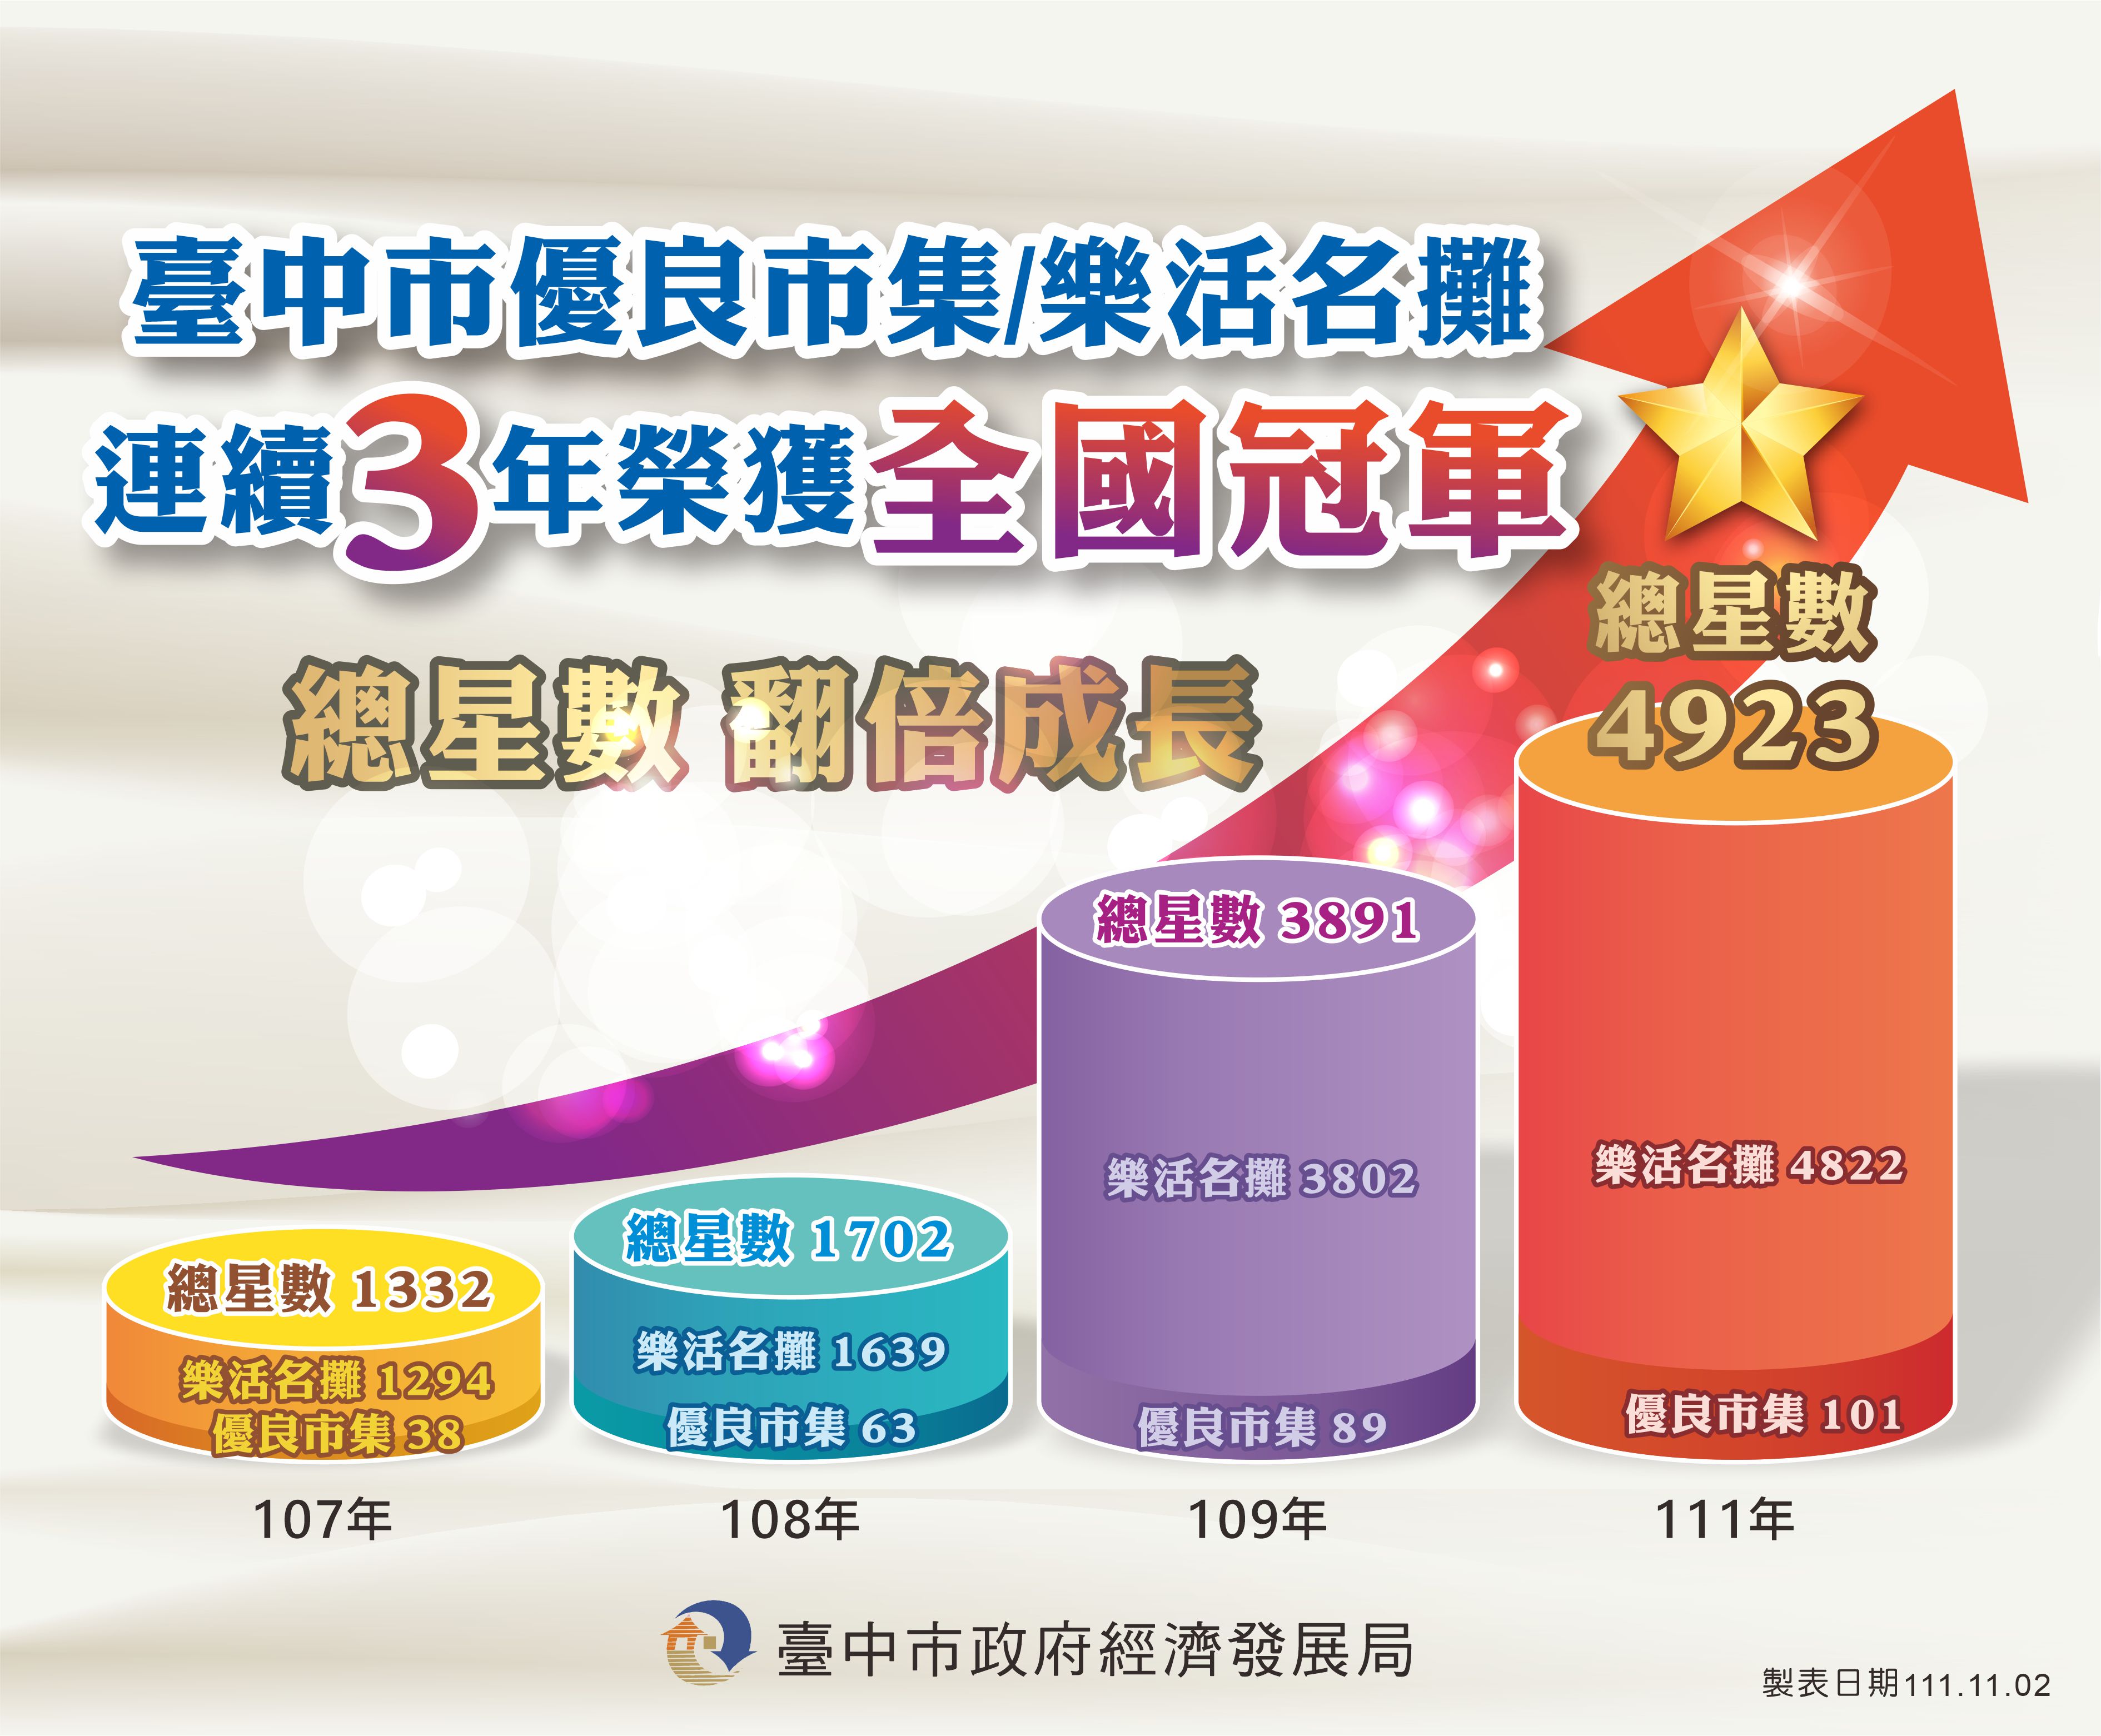 台中市今年度市集與名攤共計4,923顆星，連3年獲得全國冠軍